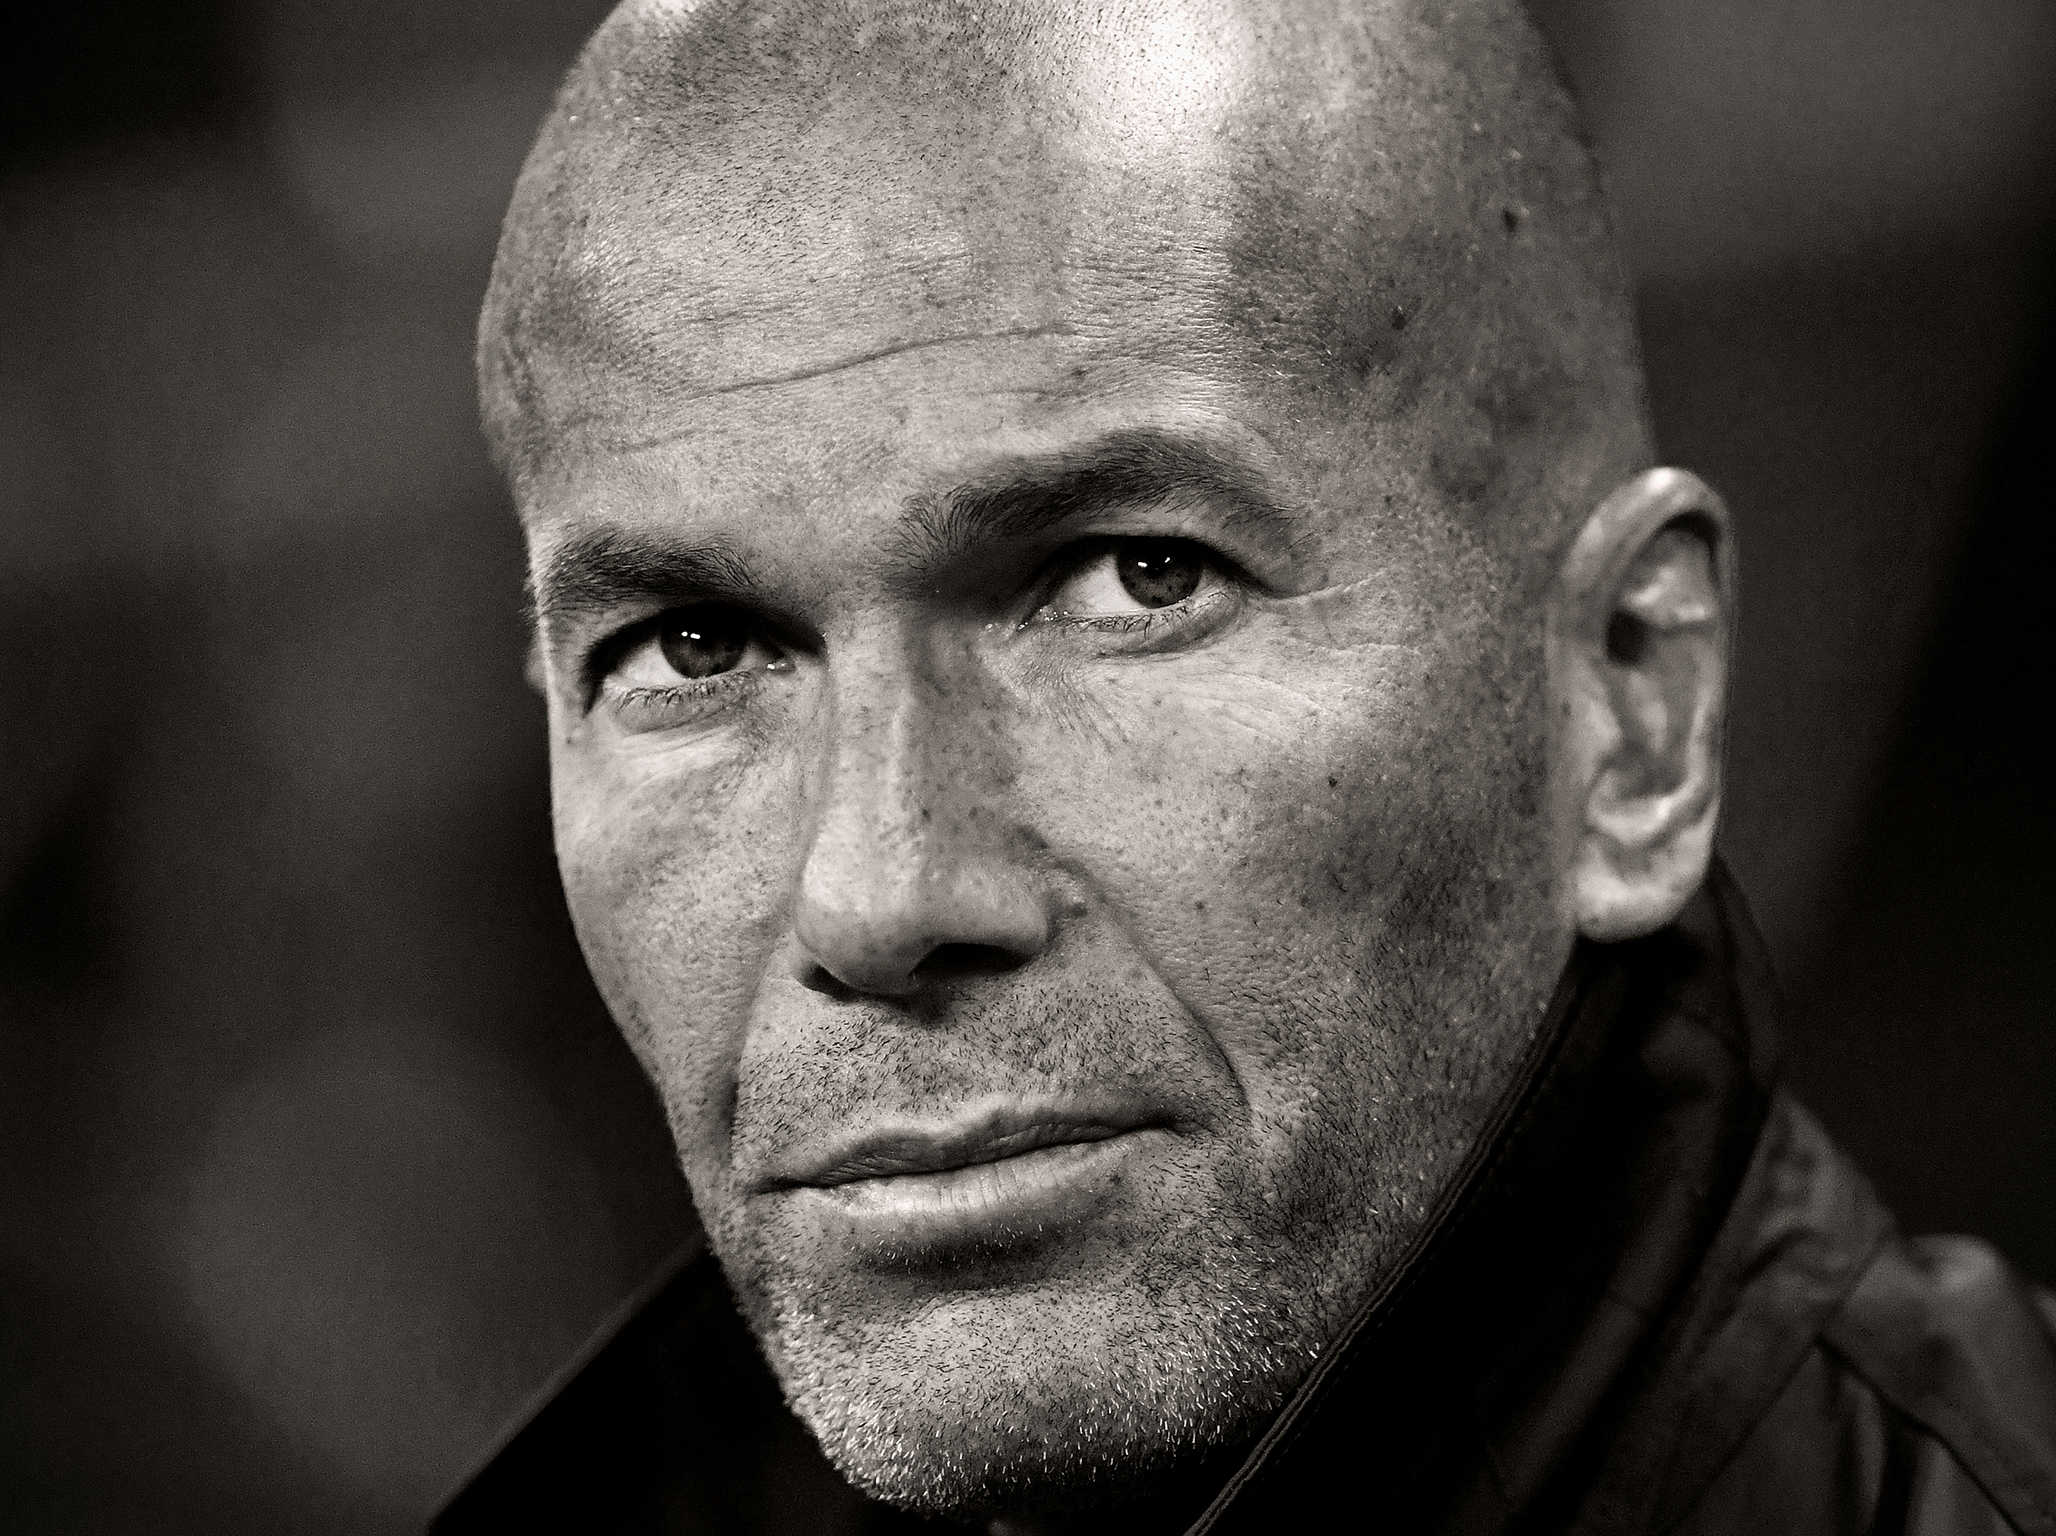 Câu chuyện thể thao: Trung vệ đâu, Zidane?